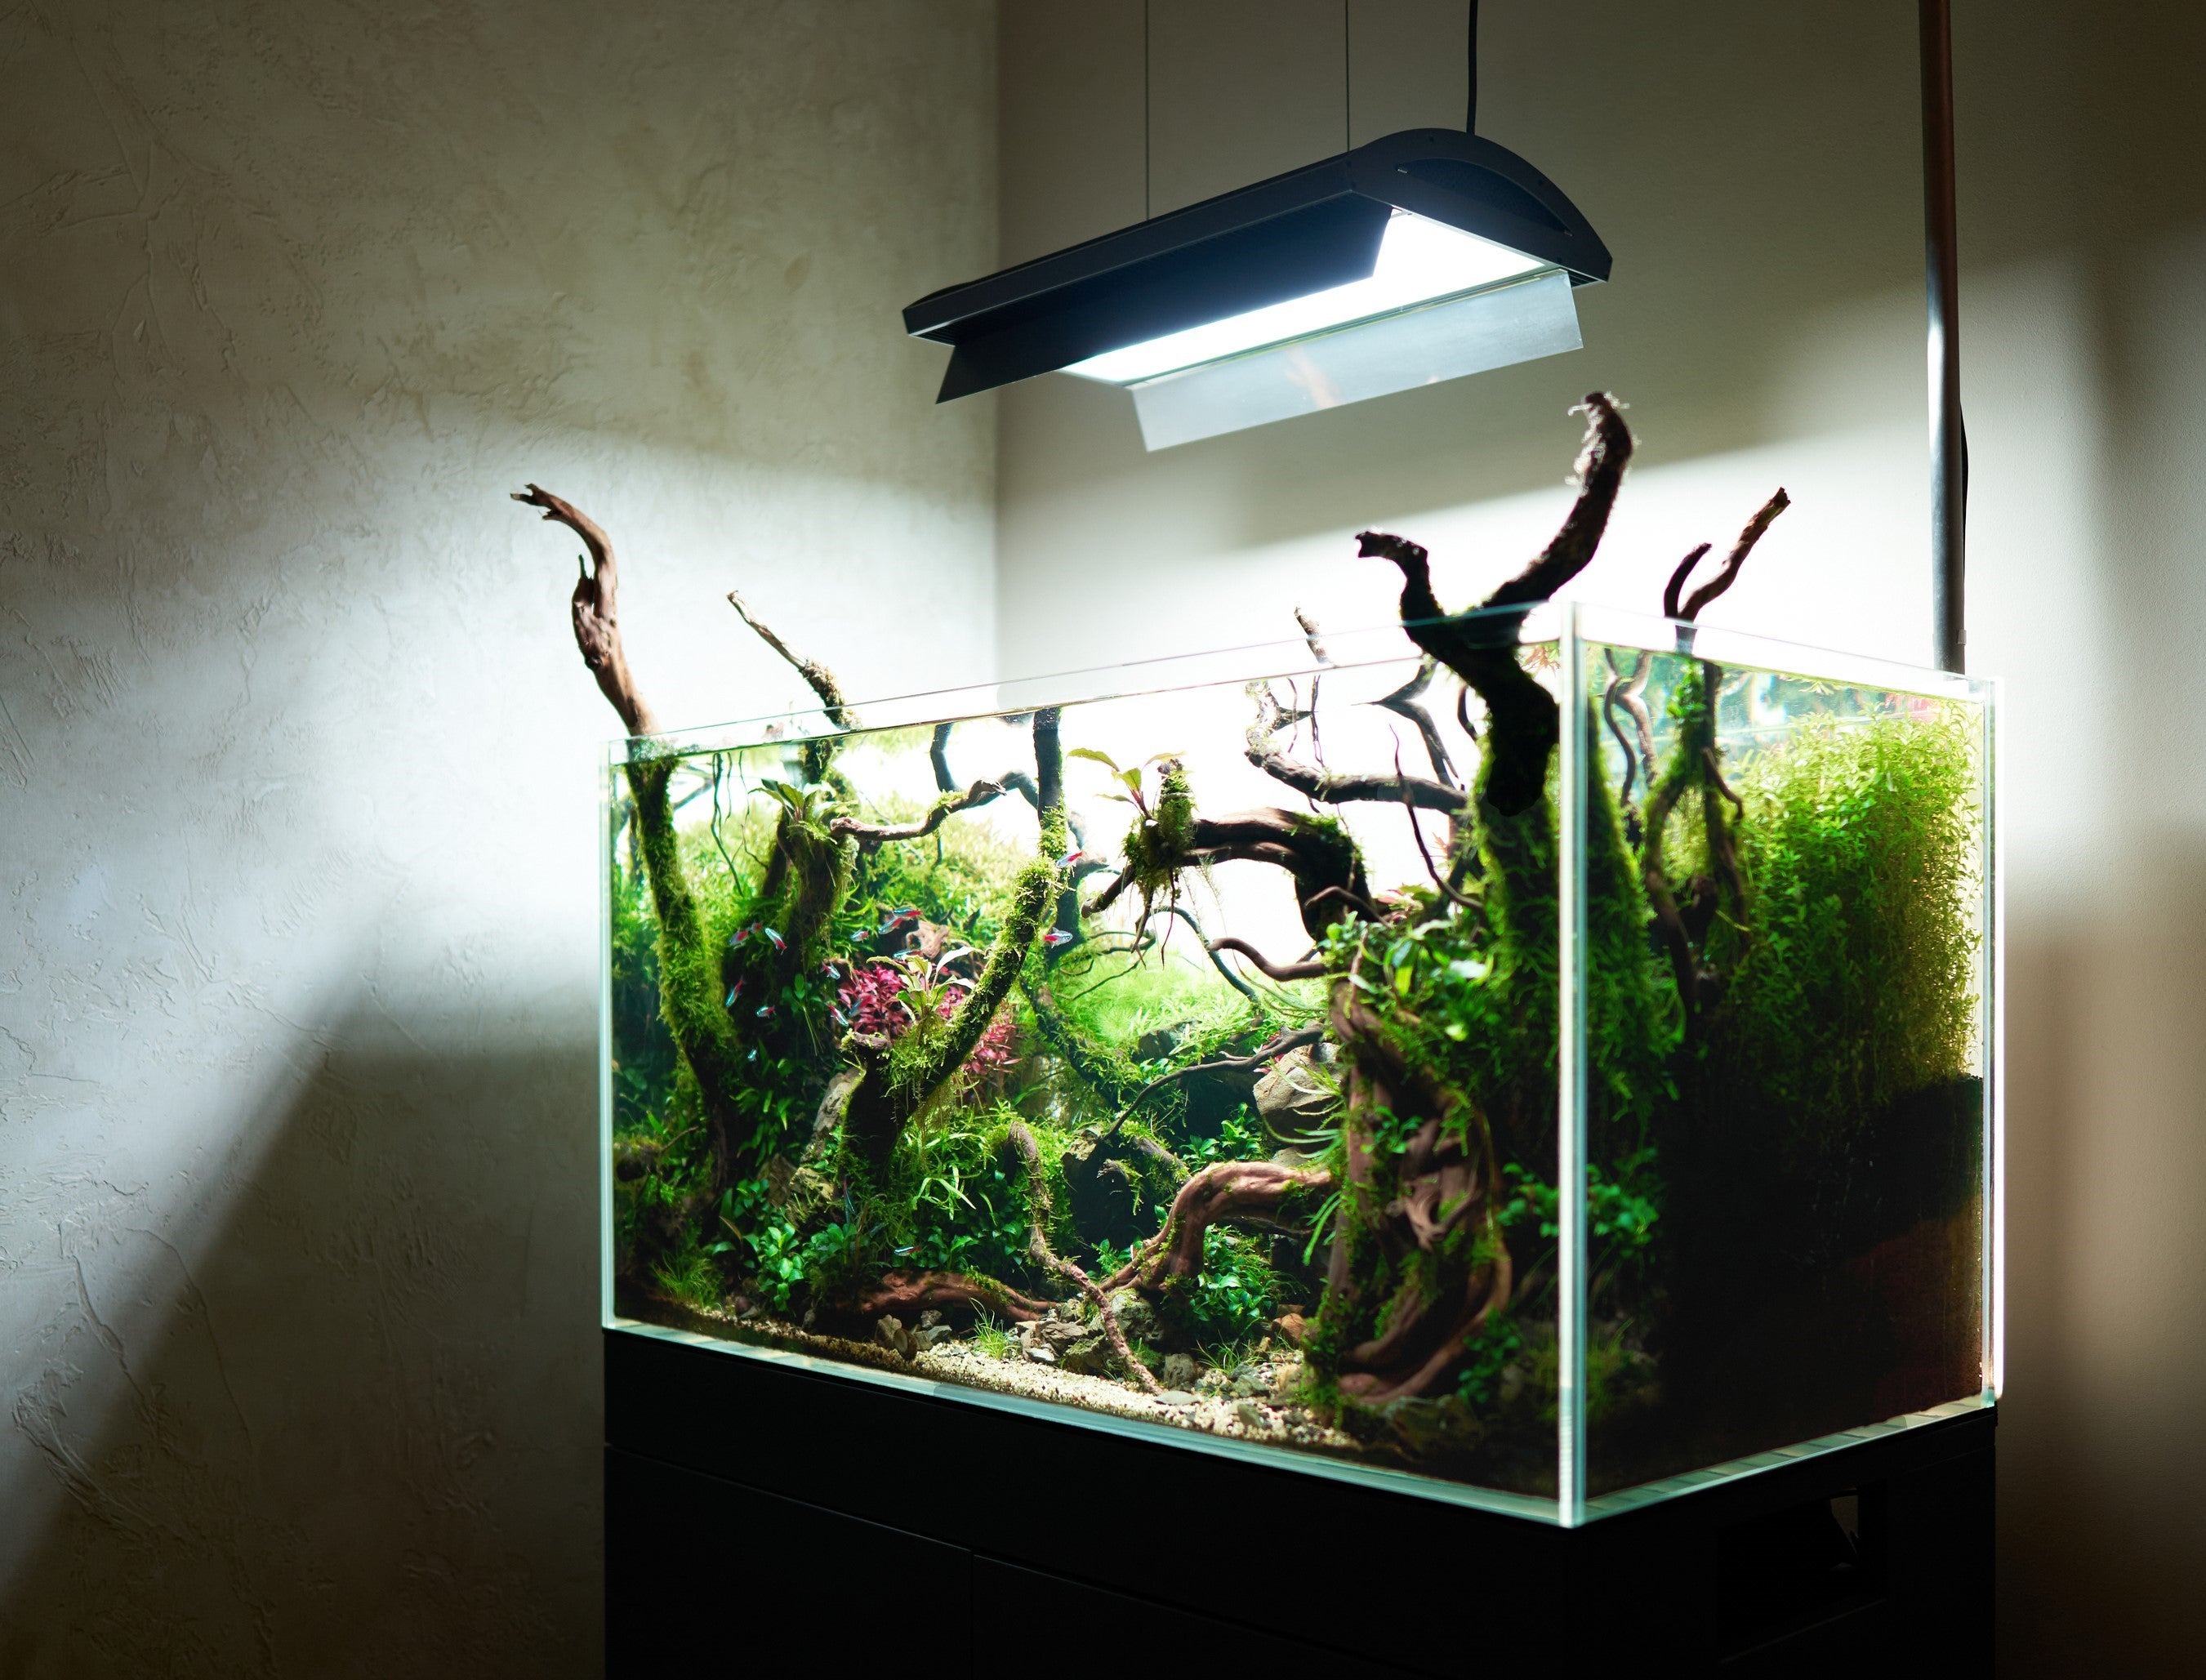 Planted aquarium not in direct sunlight